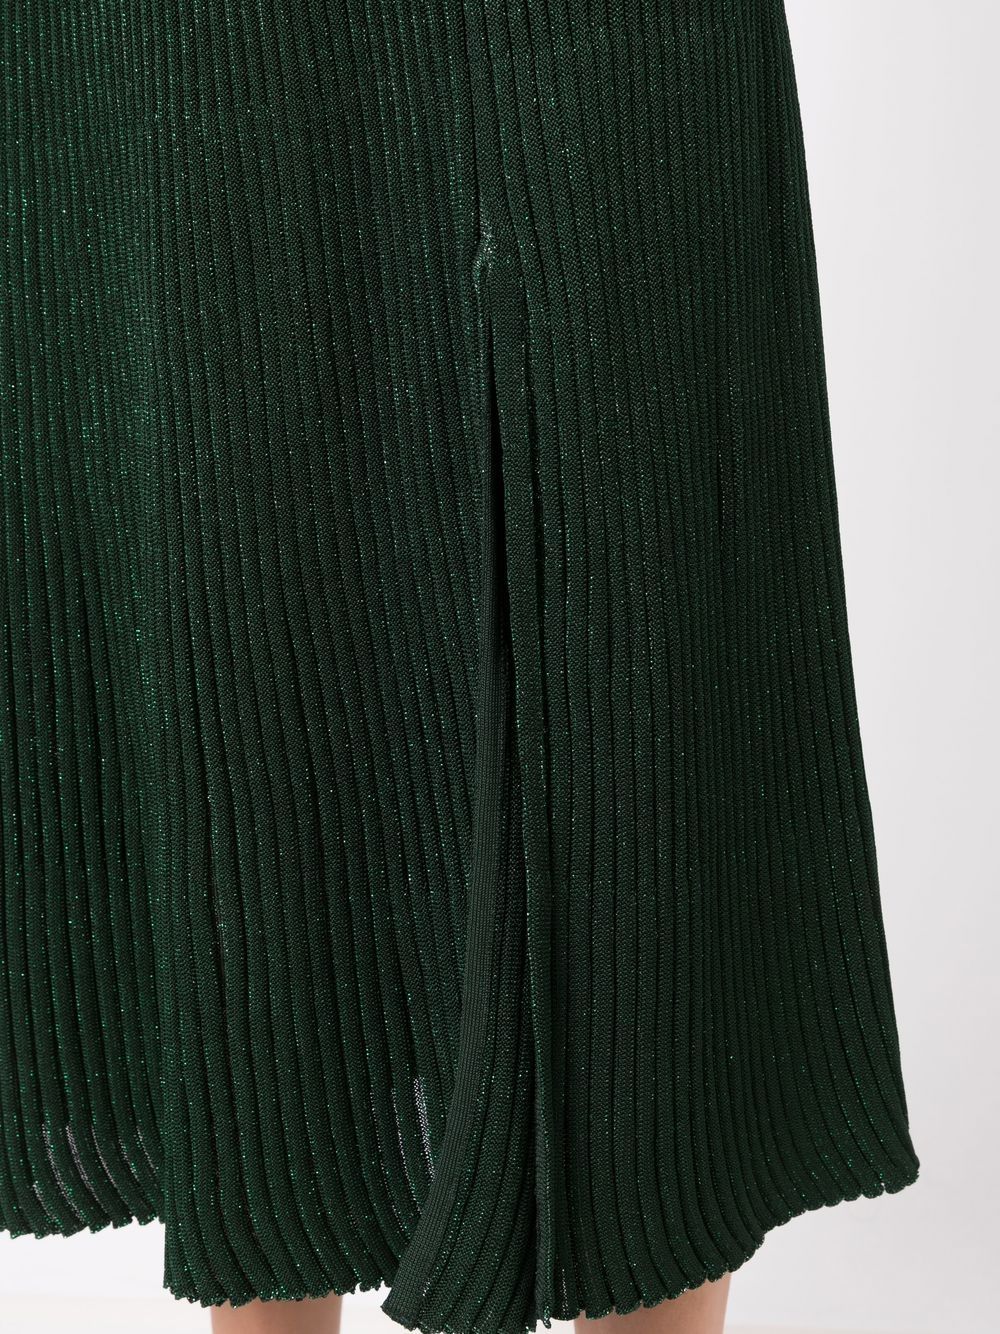 Nk cut-out Detail Midi Dress - Farfetch